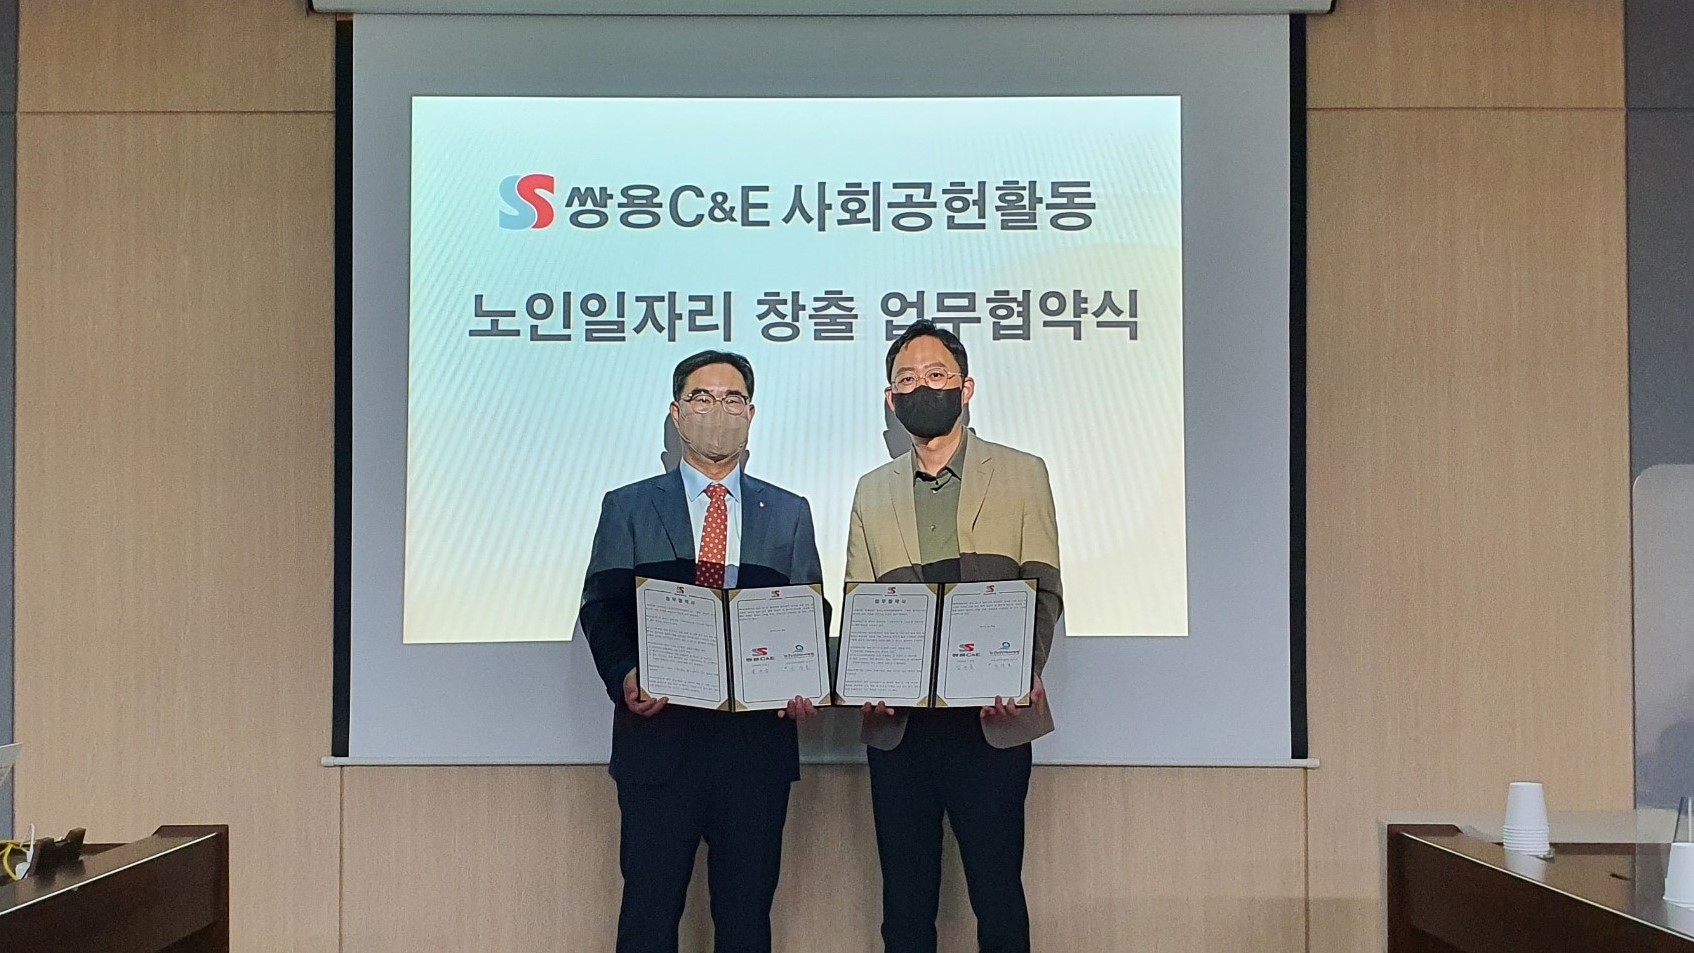 한국노인인력개발원,쌍용C&E와 사회서비스형 선도모델 사업 협약 체결